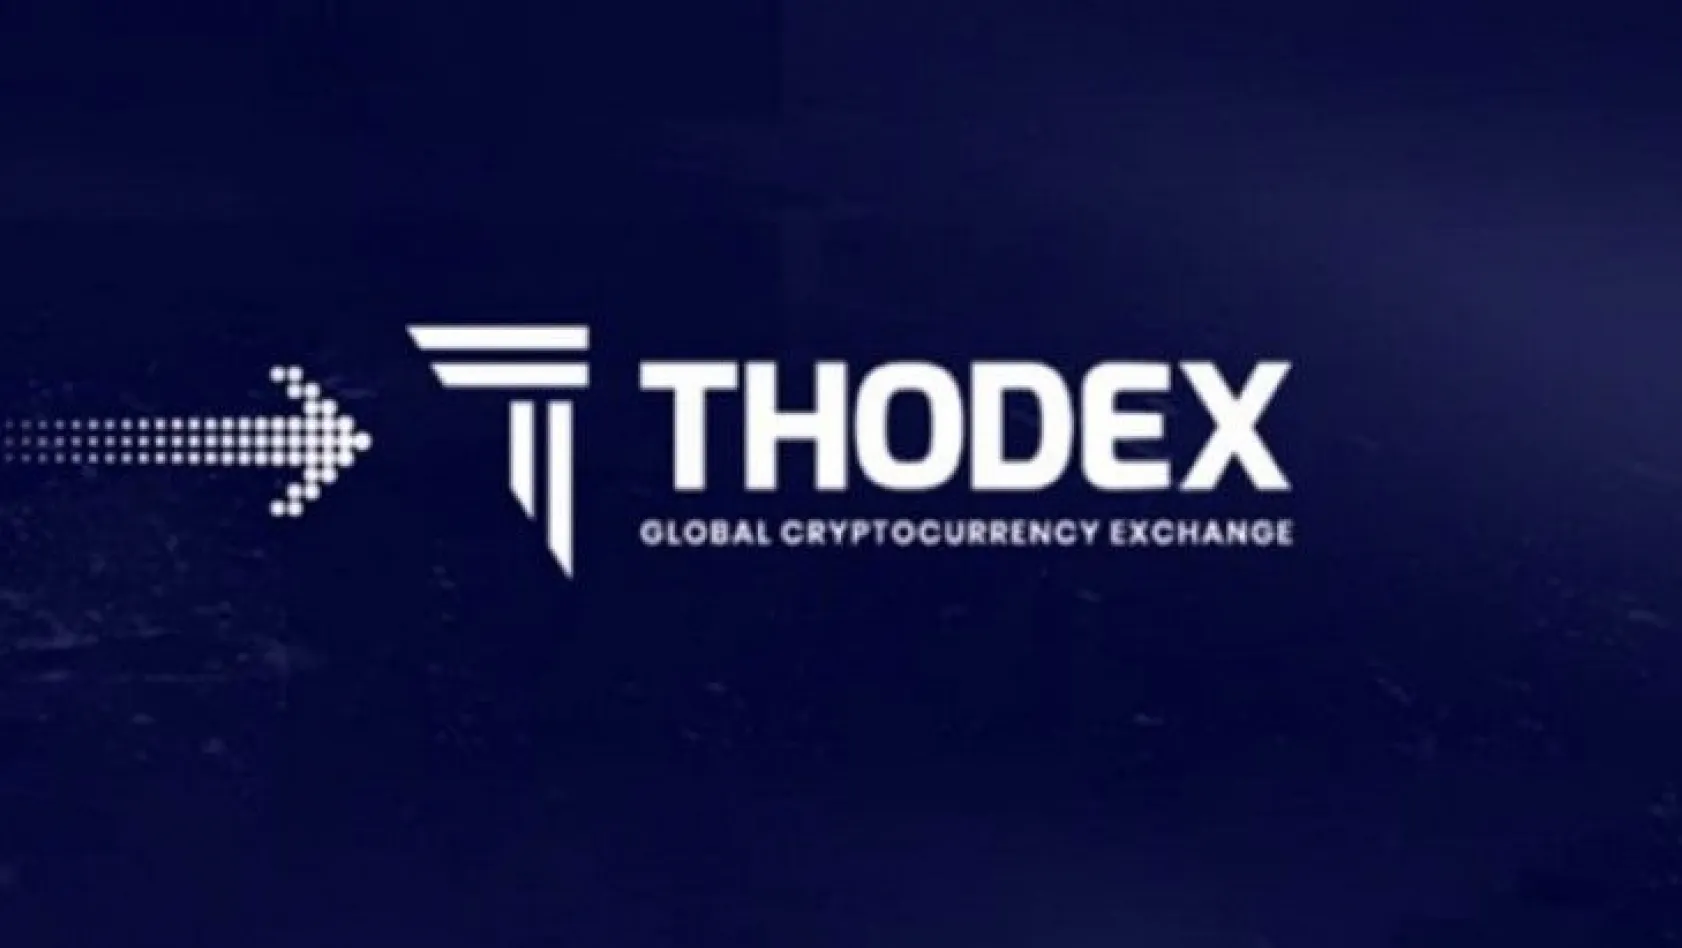 Anadolu Cumhuriyet Başsavcılığı'ndan 'Thodex' açıklaması